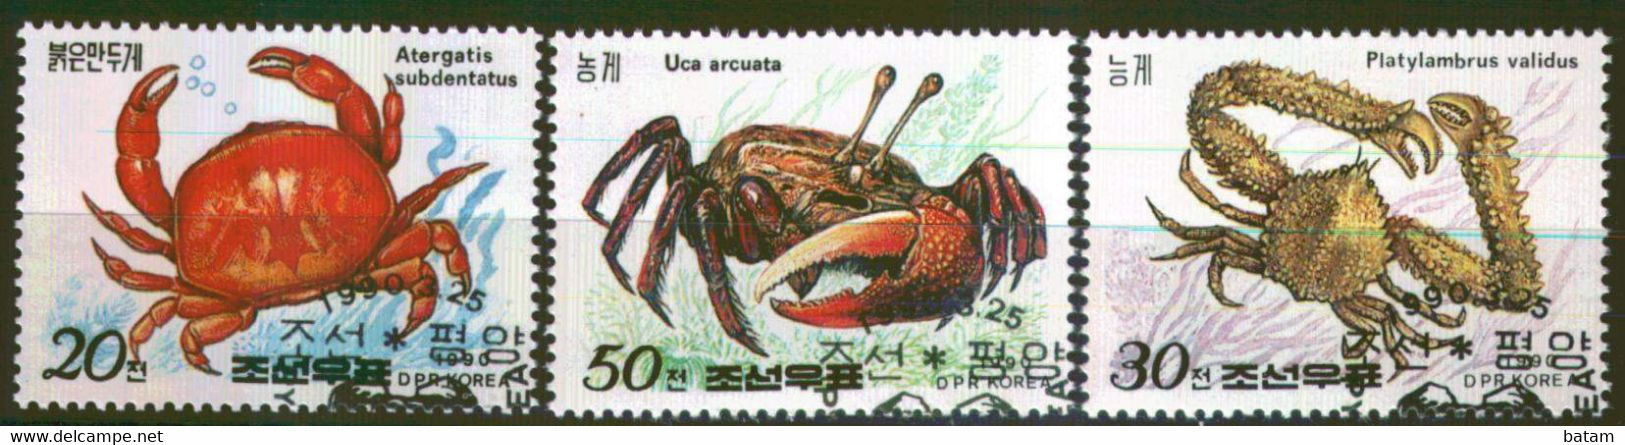 229 - Korea - Crustaceans - Used Set - Schalentiere